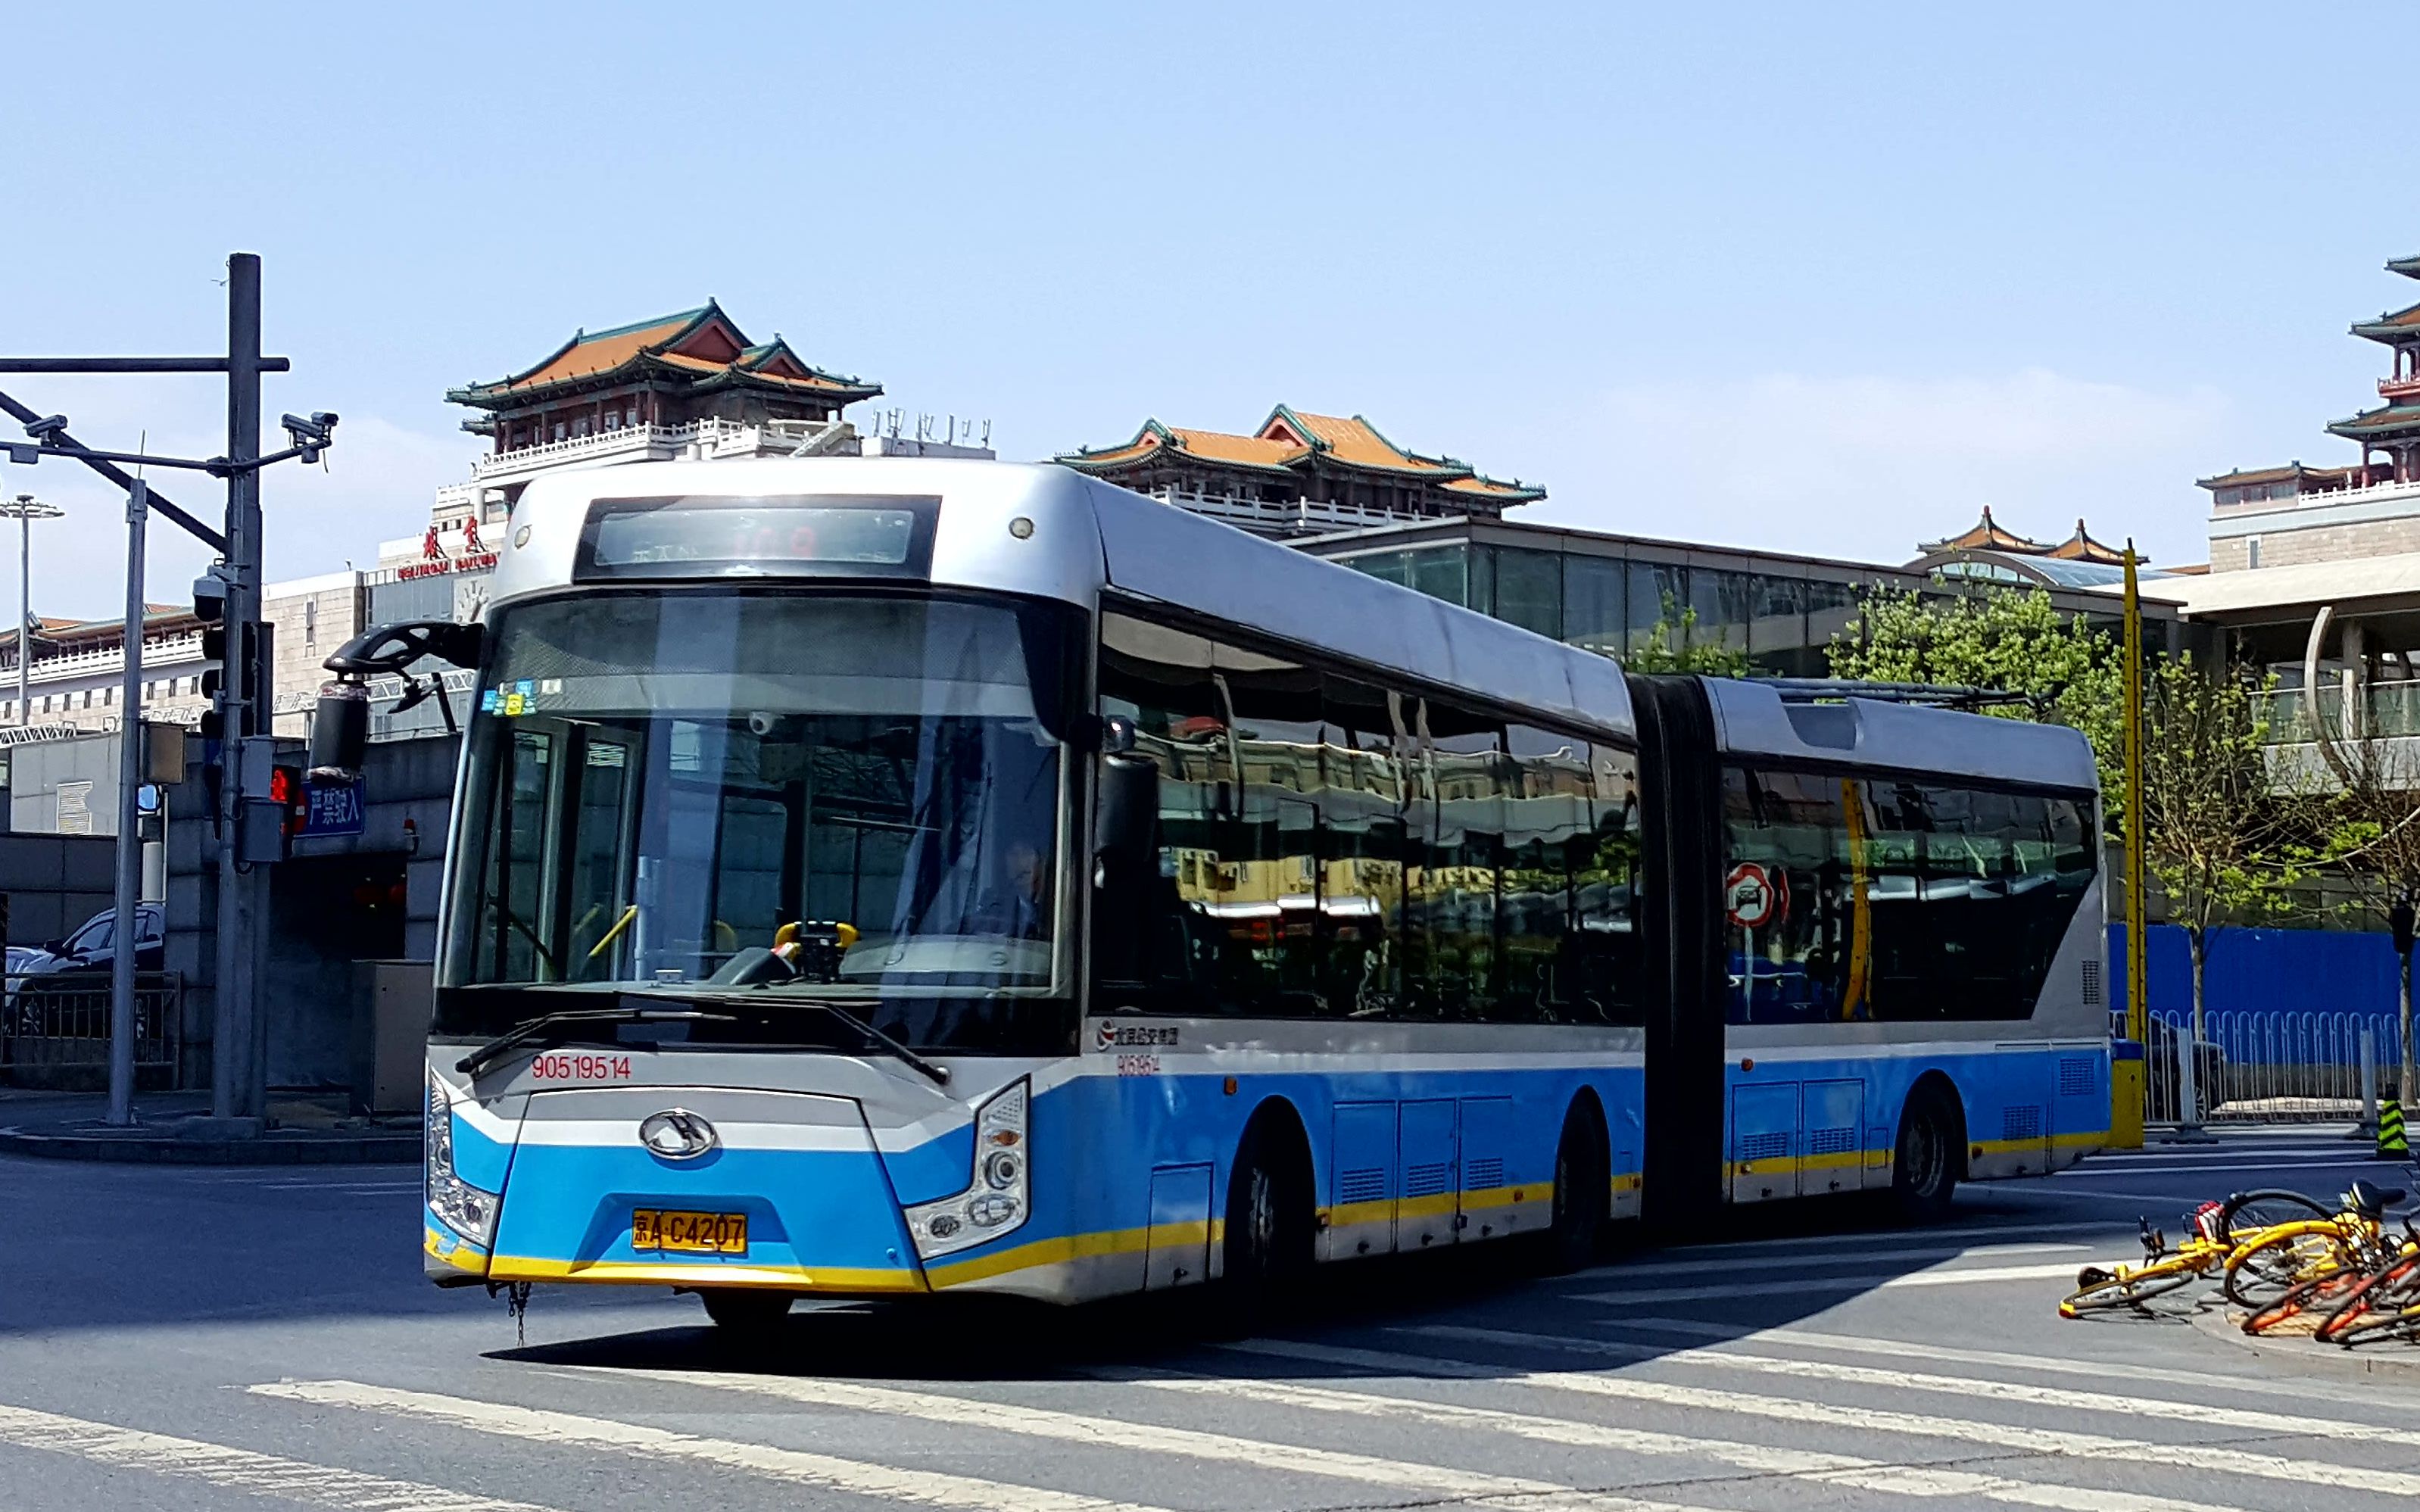 沧州公交车型介绍3 - 哔哩哔哩